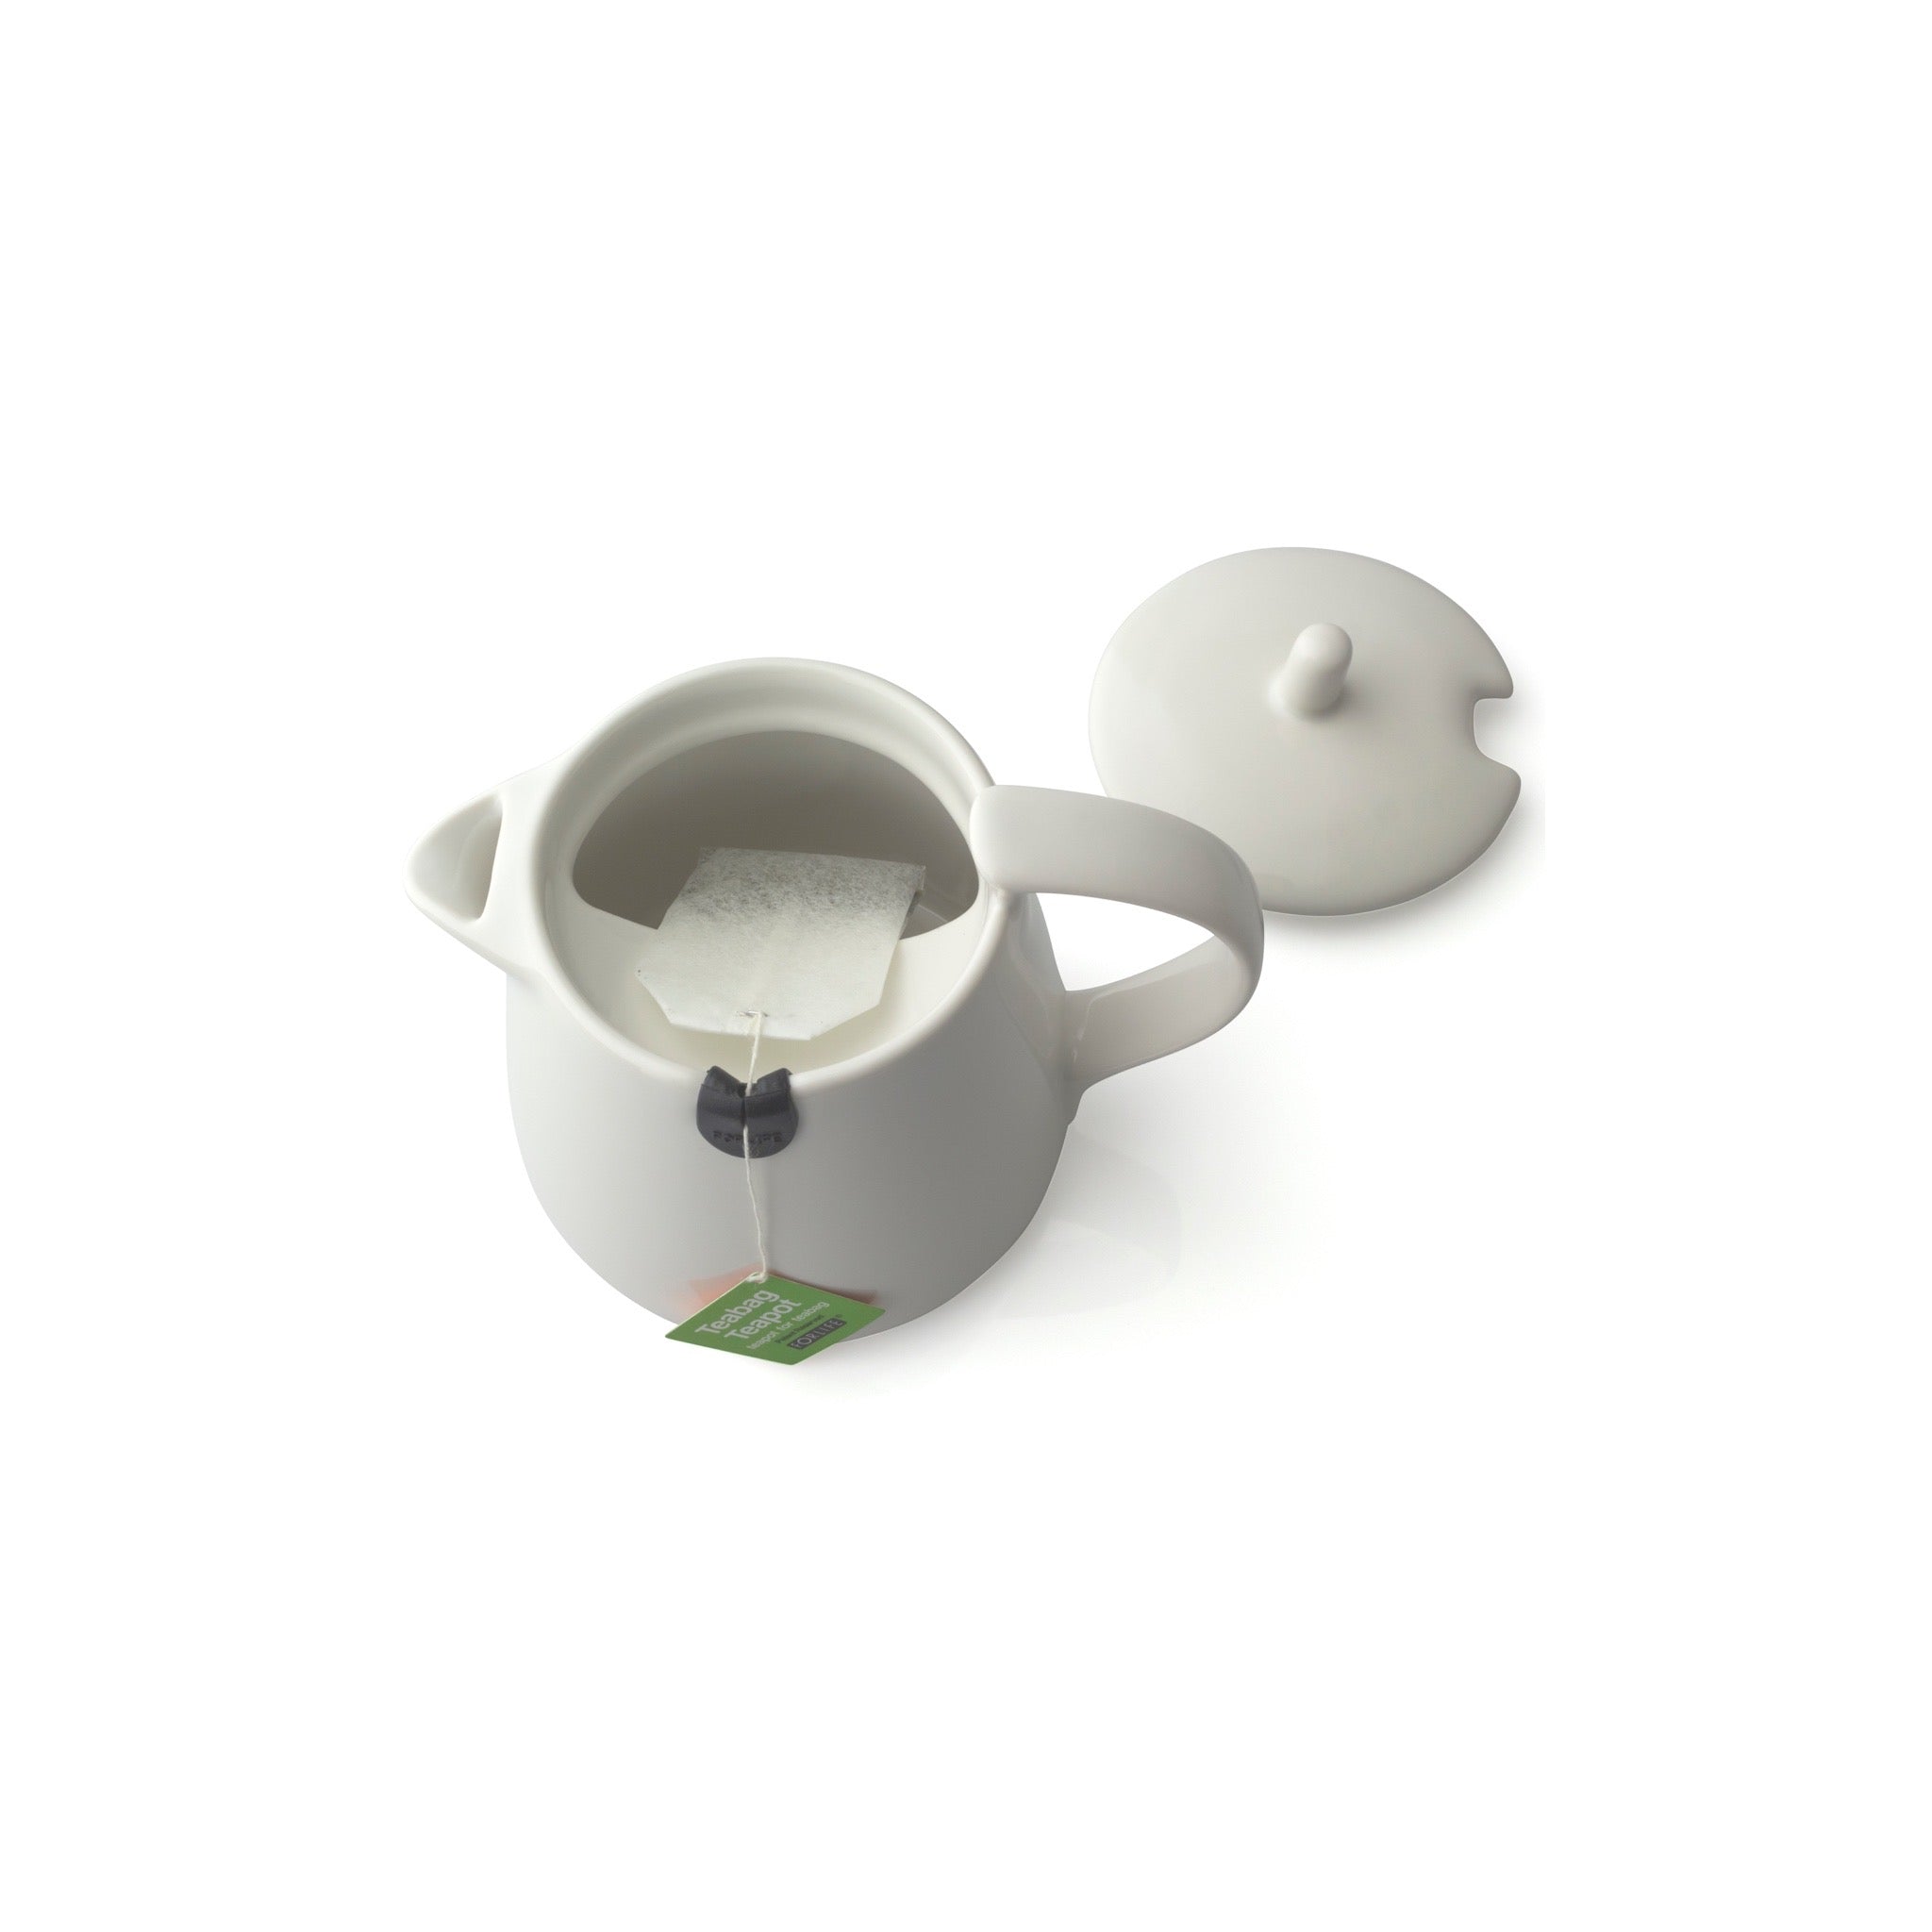 [FORLIFE] Teabag Teapot